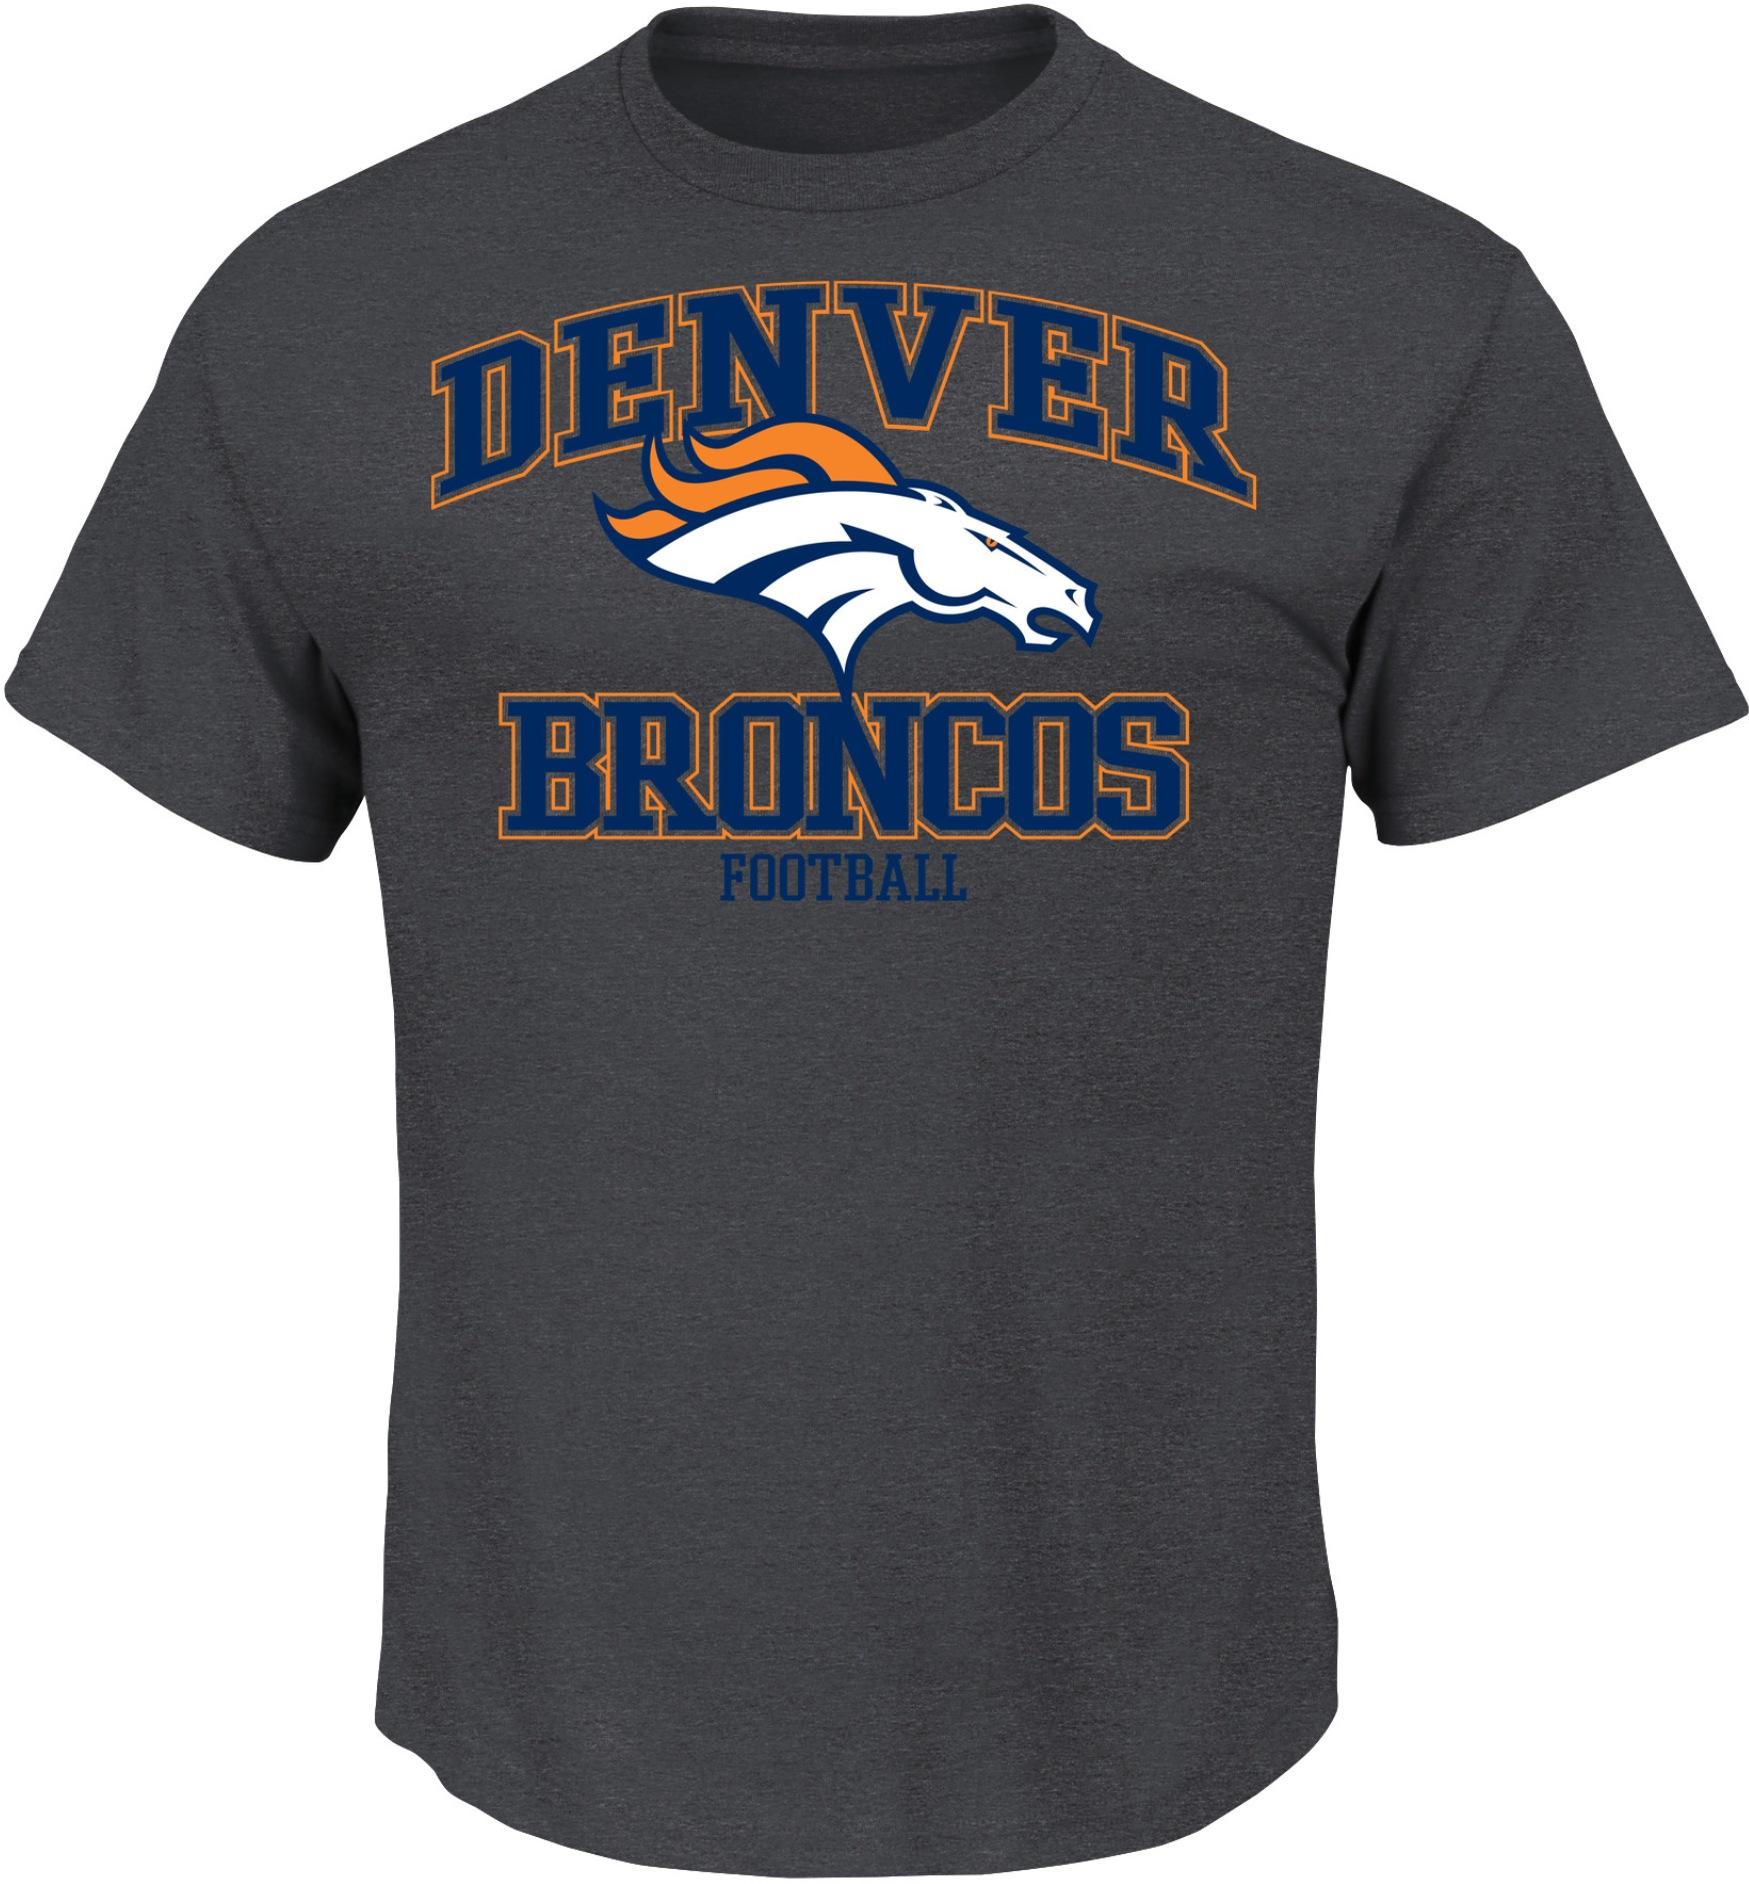 NFL Men's T-Shirt - Denver Broncos